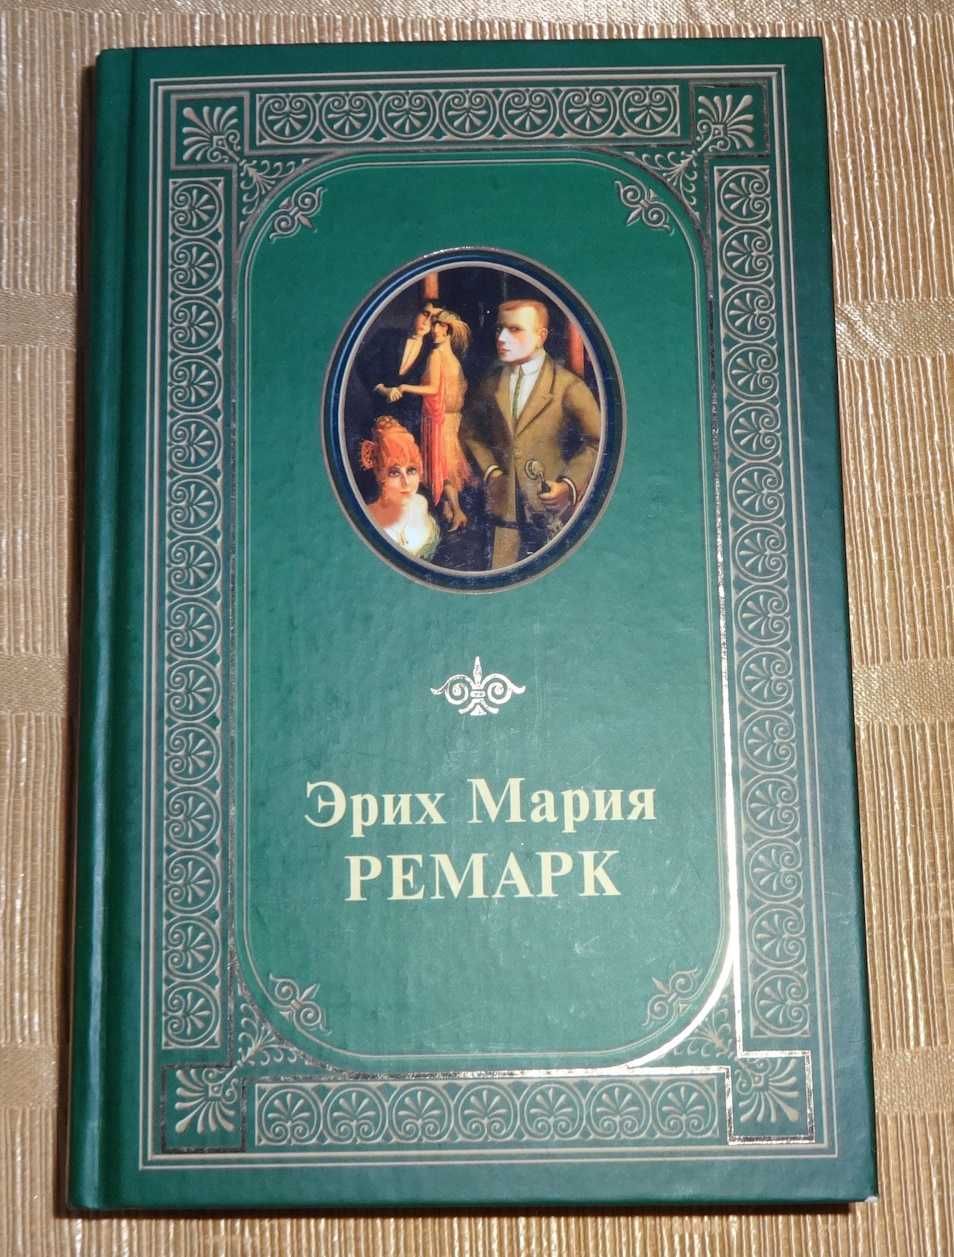 Книга  "Избранный произведения" Эрих Мария Ремарк